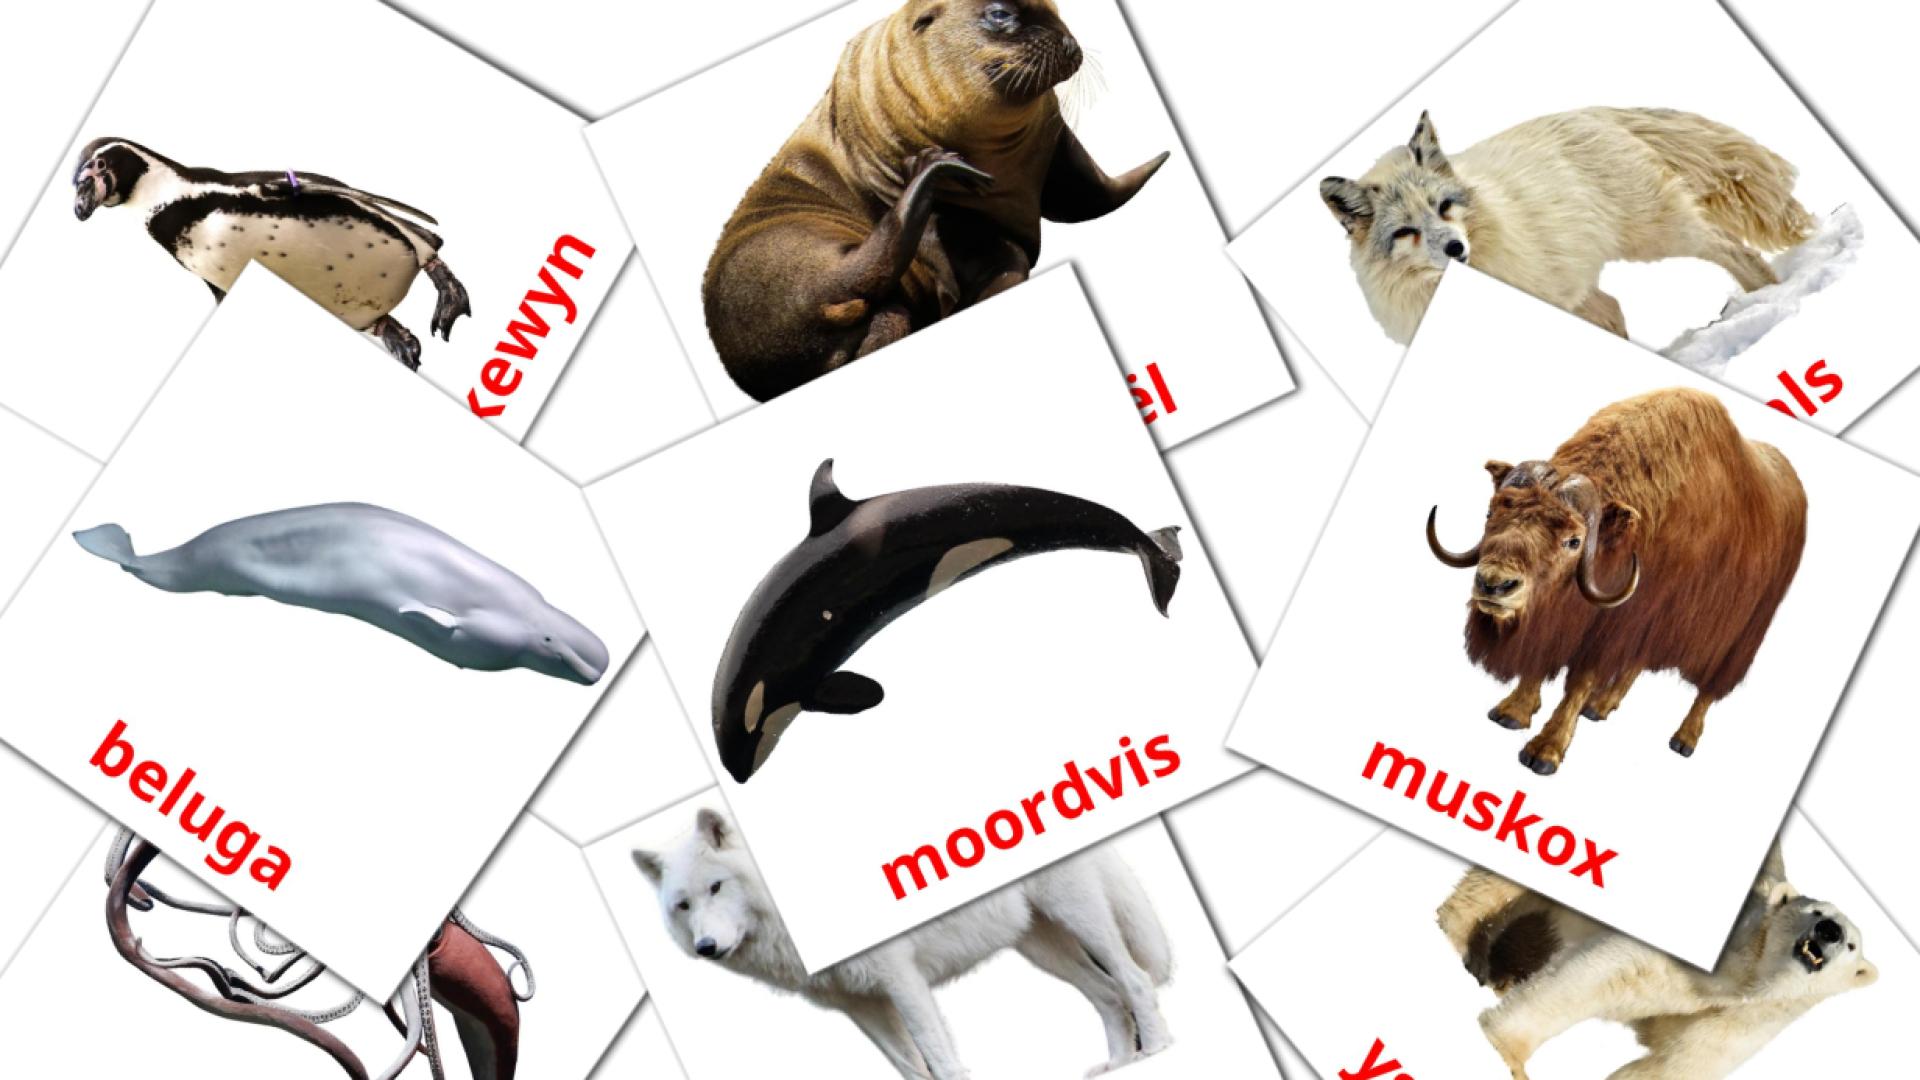 Bildkarten für Tiere in der arktis